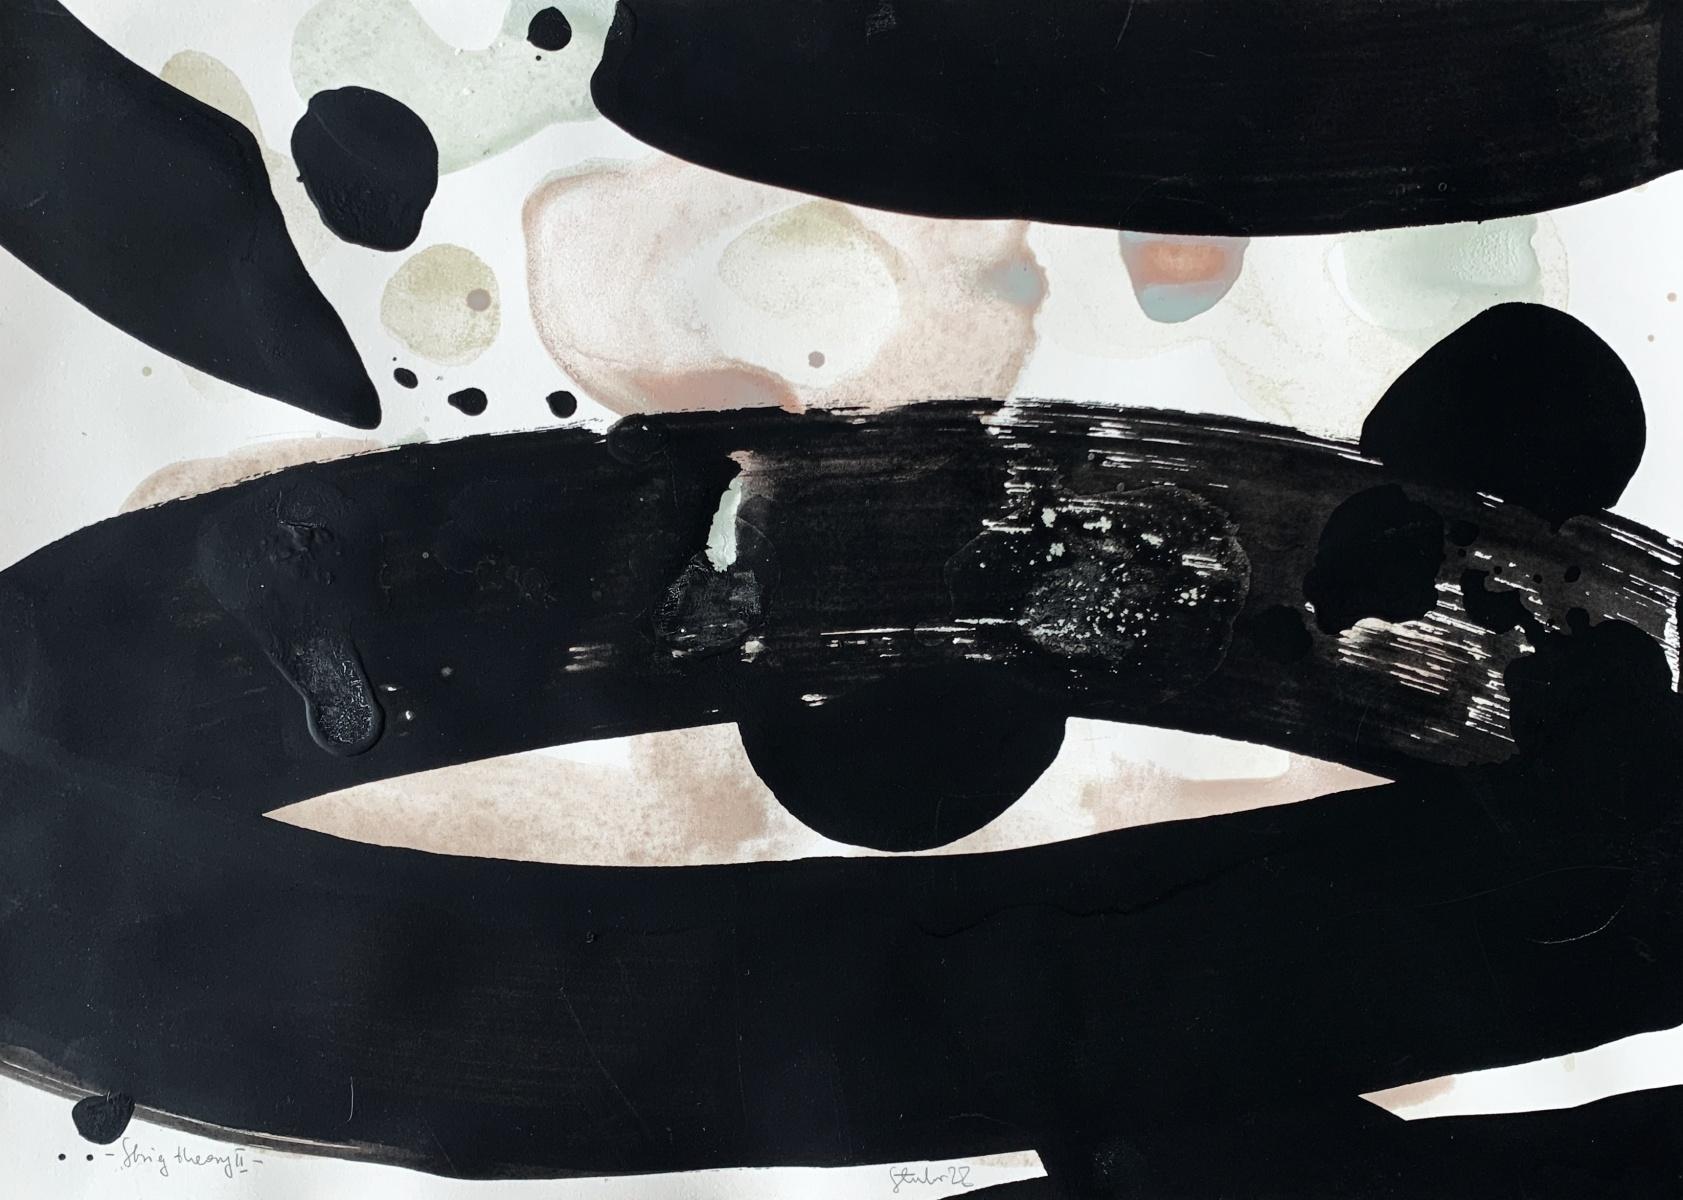 théorie des cordes 2 - Abstraction, Acrylique sur papier, Cosmos, artiste polonais - Mixed Media Art de Marianna Stuhr